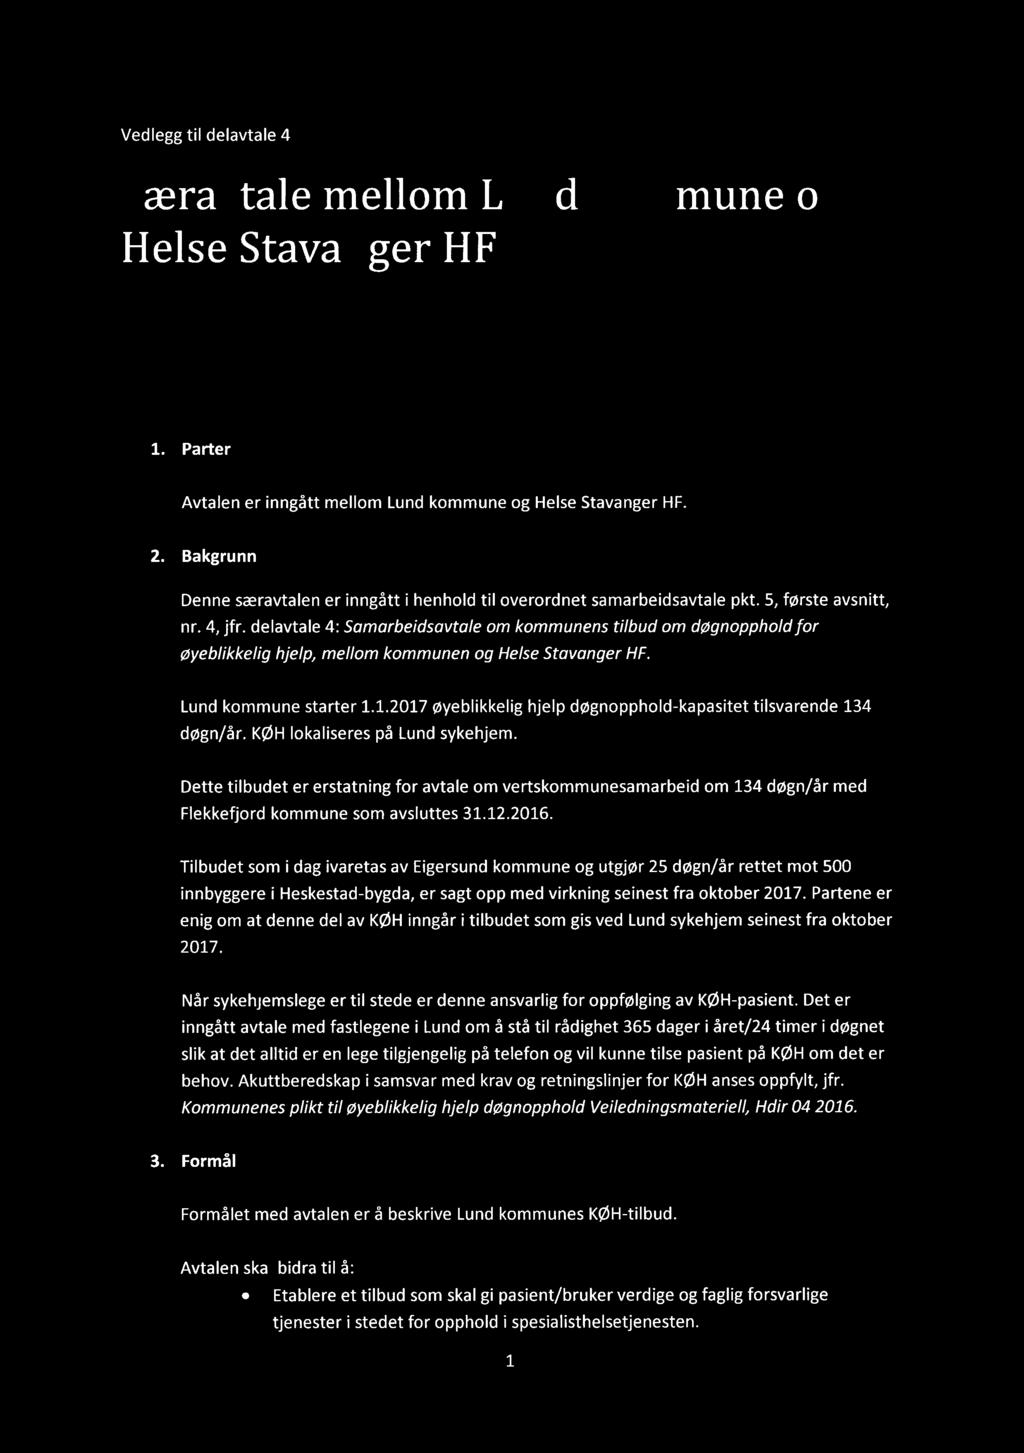 M OTTATT 10 FEB2017 Vedlegg til delavtale 4 Særavtale mellom Lund kommune Helse Stavanger HF Helse Stavanger og HF Vedr.